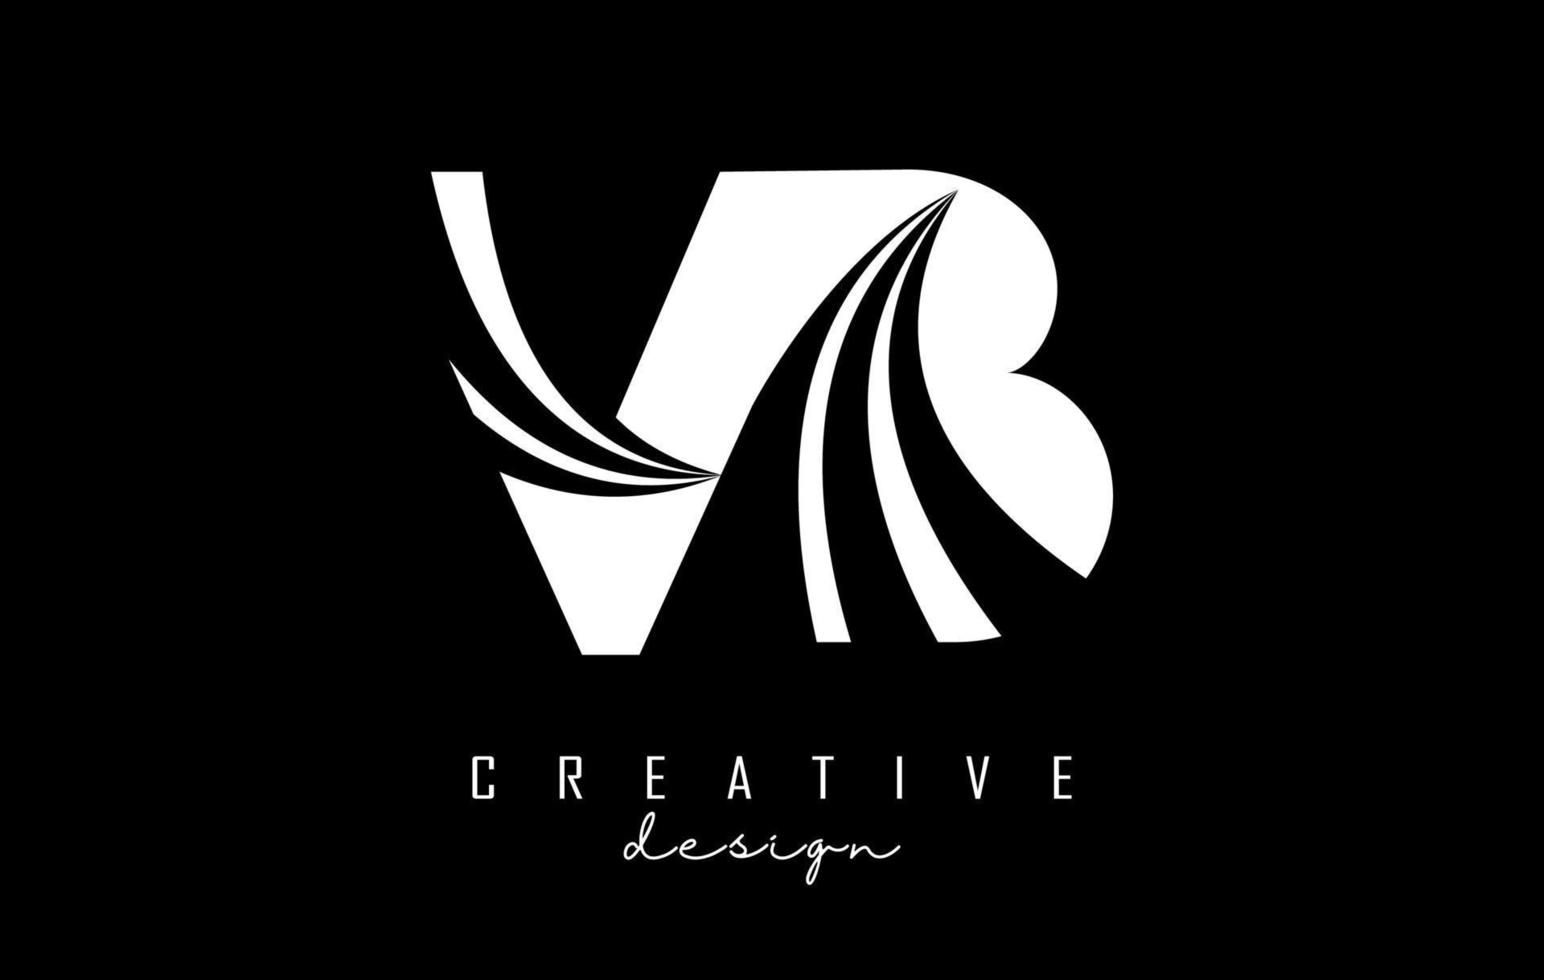 kreative weiße buchstaben vb vb-logo mit führenden linien und straßenkonzeptdesign. Buchstaben mit geometrischem Design. vektor